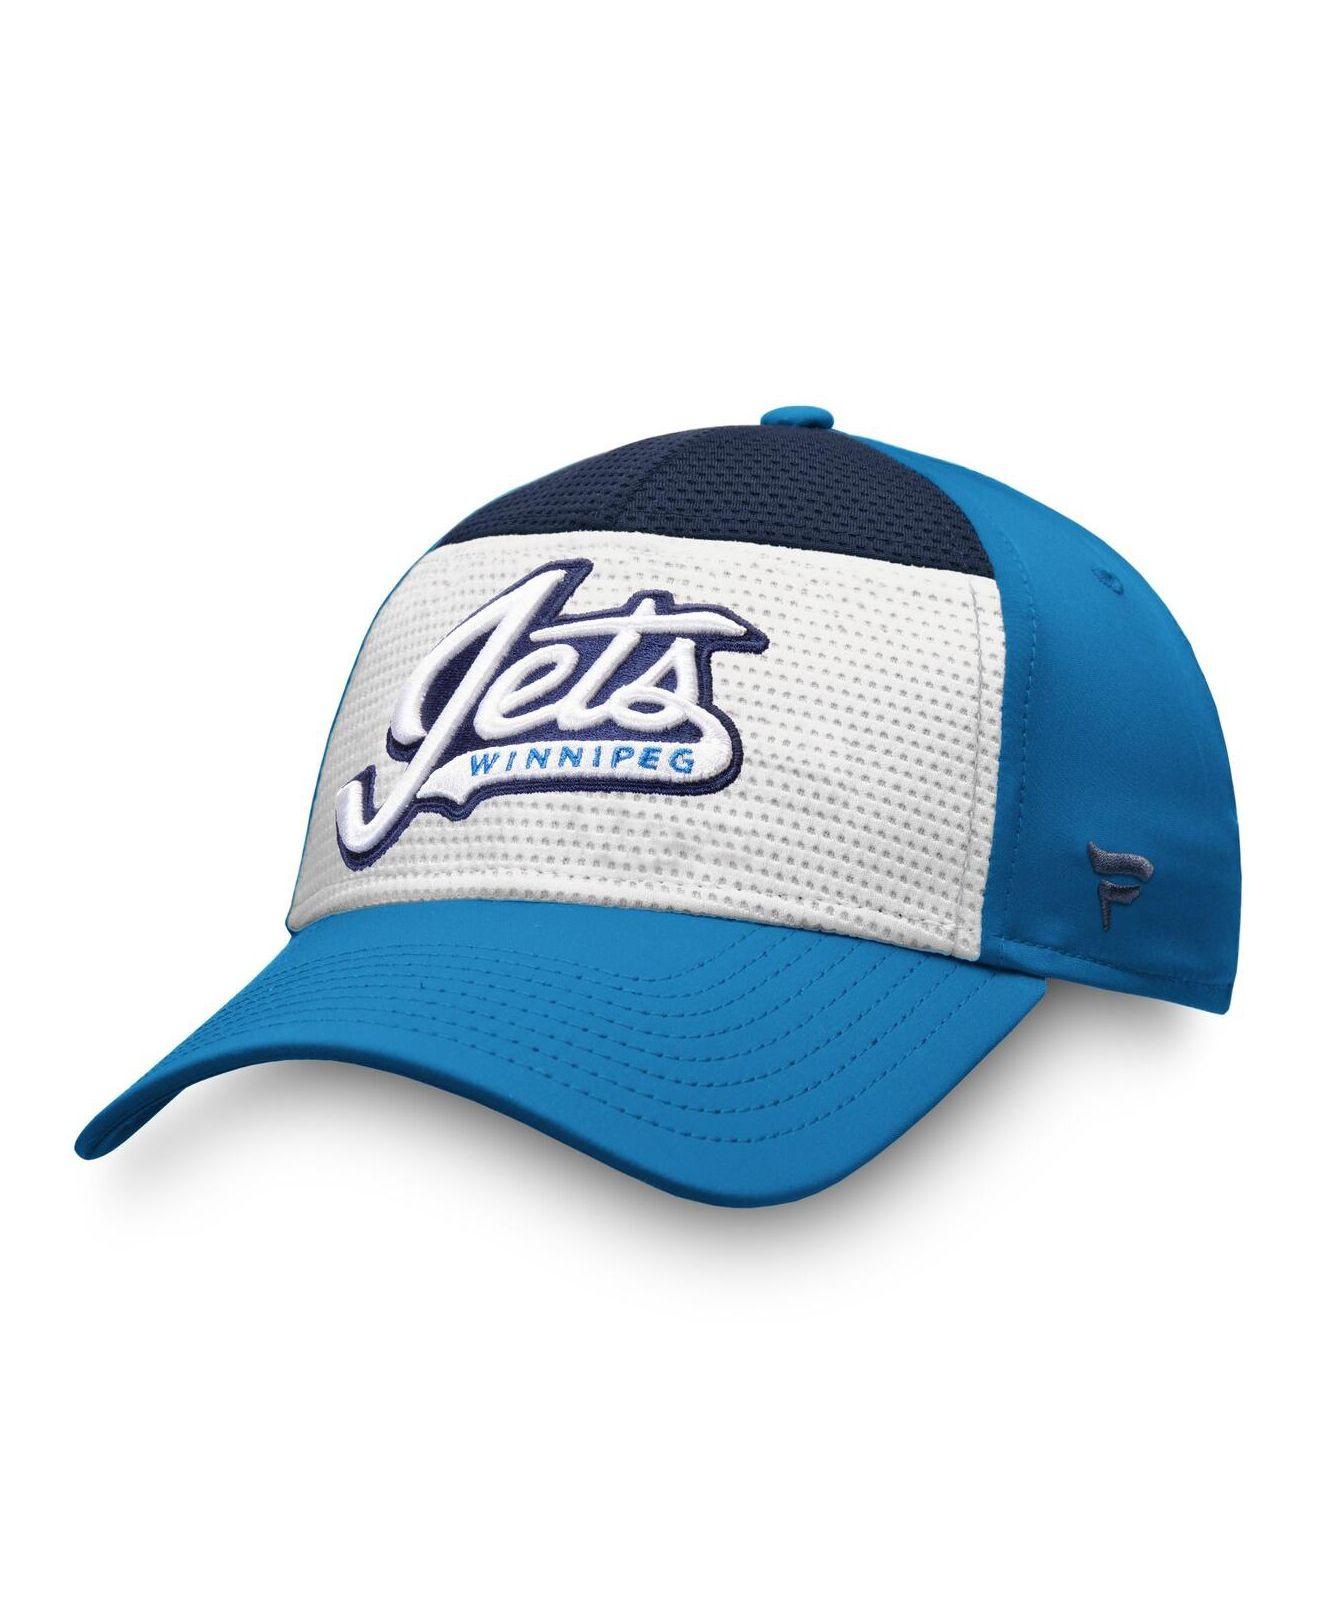 St. Louis Blues Fanatics Branded Defender Flex Hat - Royal